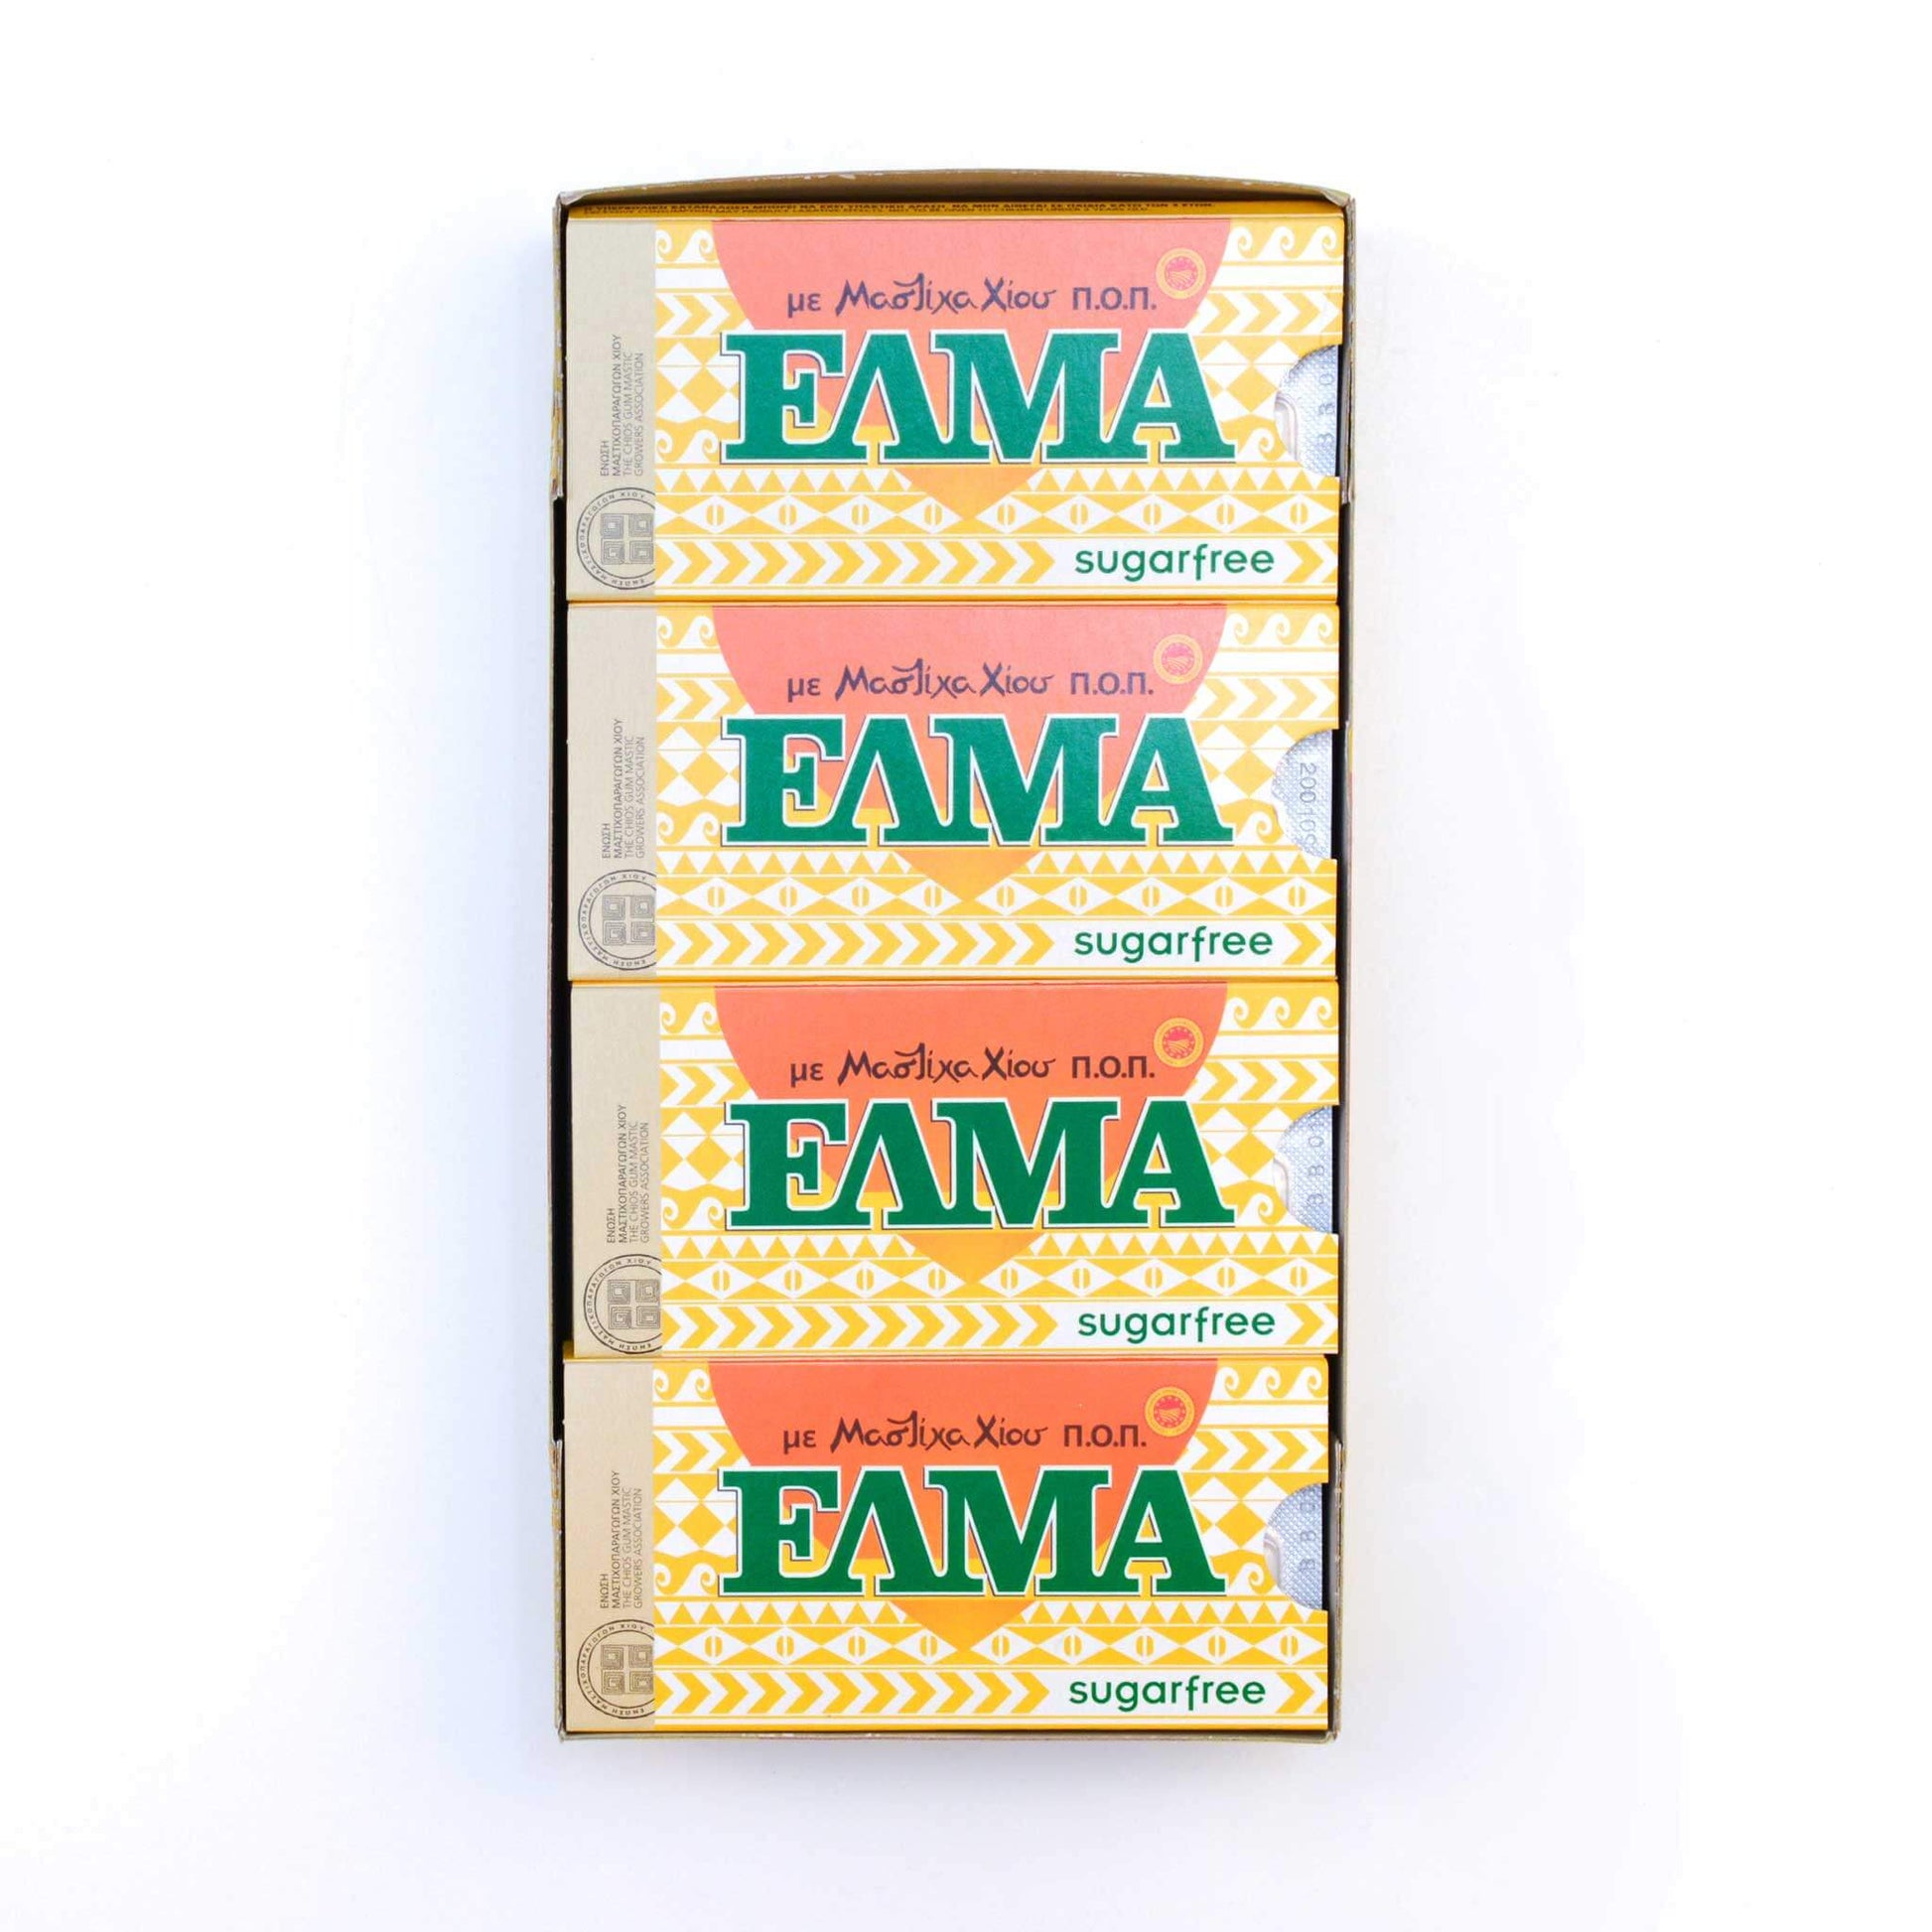 ELMA Sugarfree: mit Mastix, ohne Zucker (Box)